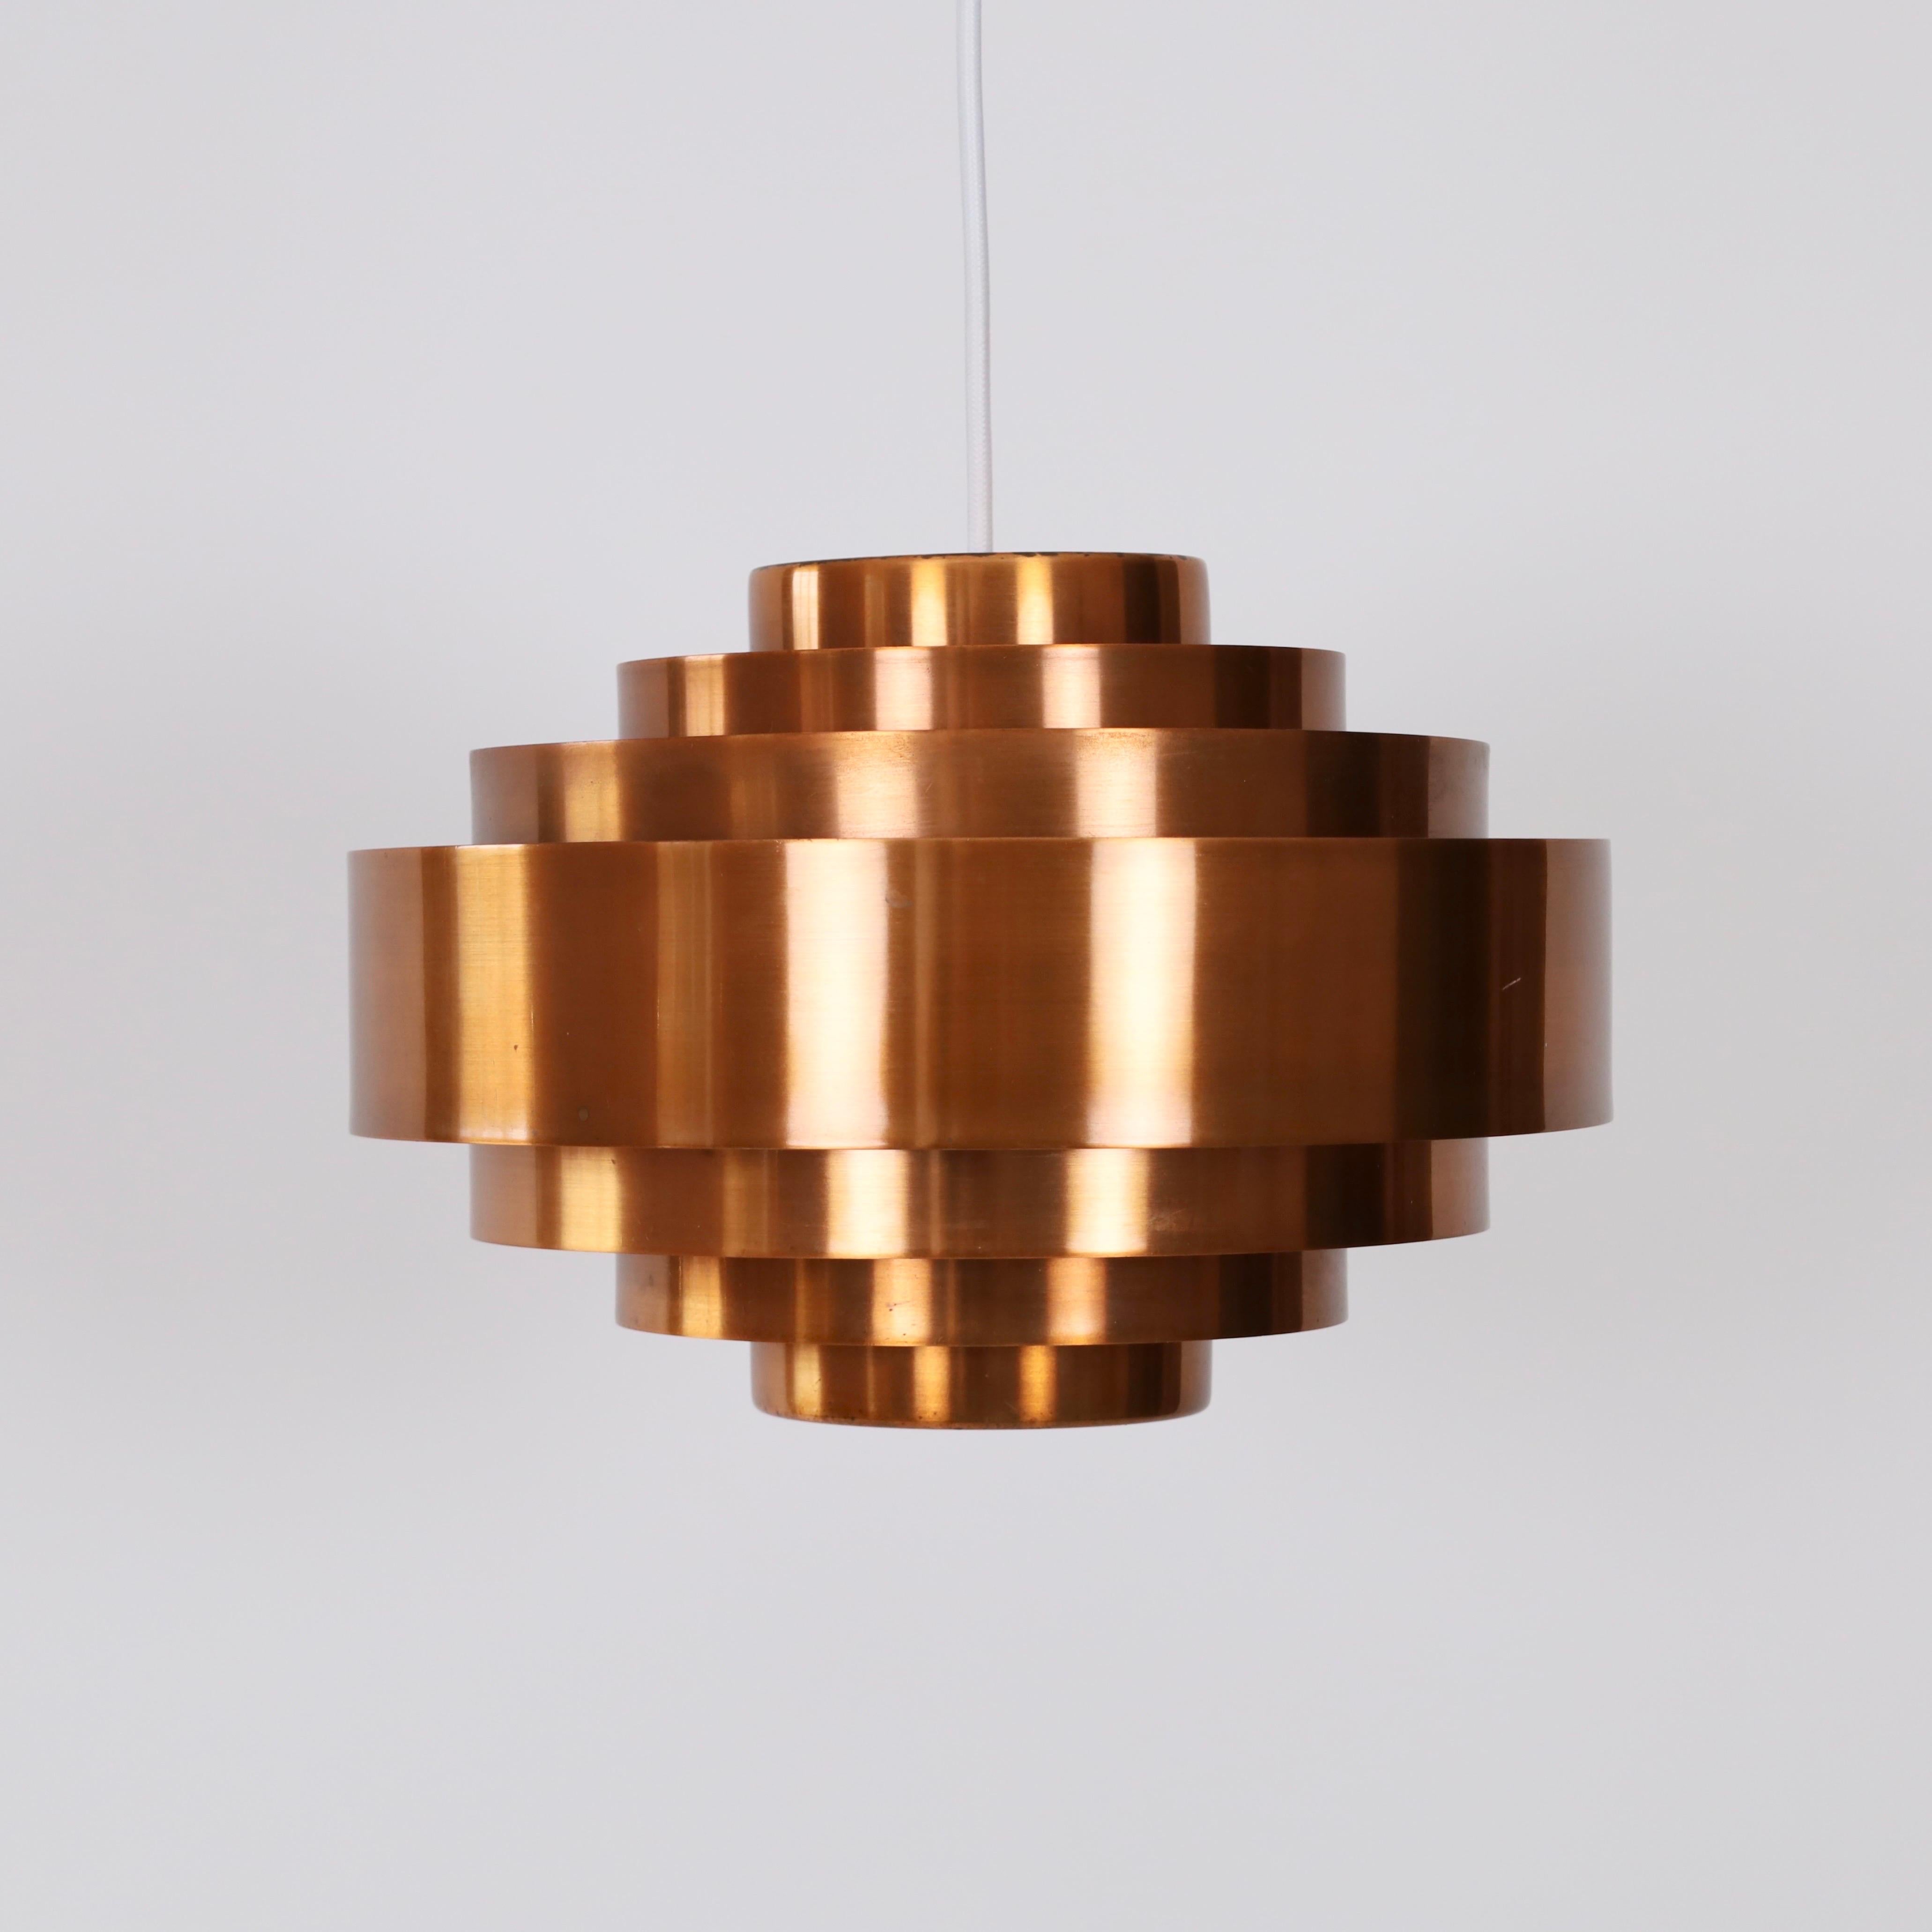 Danish Copper Pendant Light by Jo Hammerborg for Fog & Morup, 1960s, Denmark For Sale